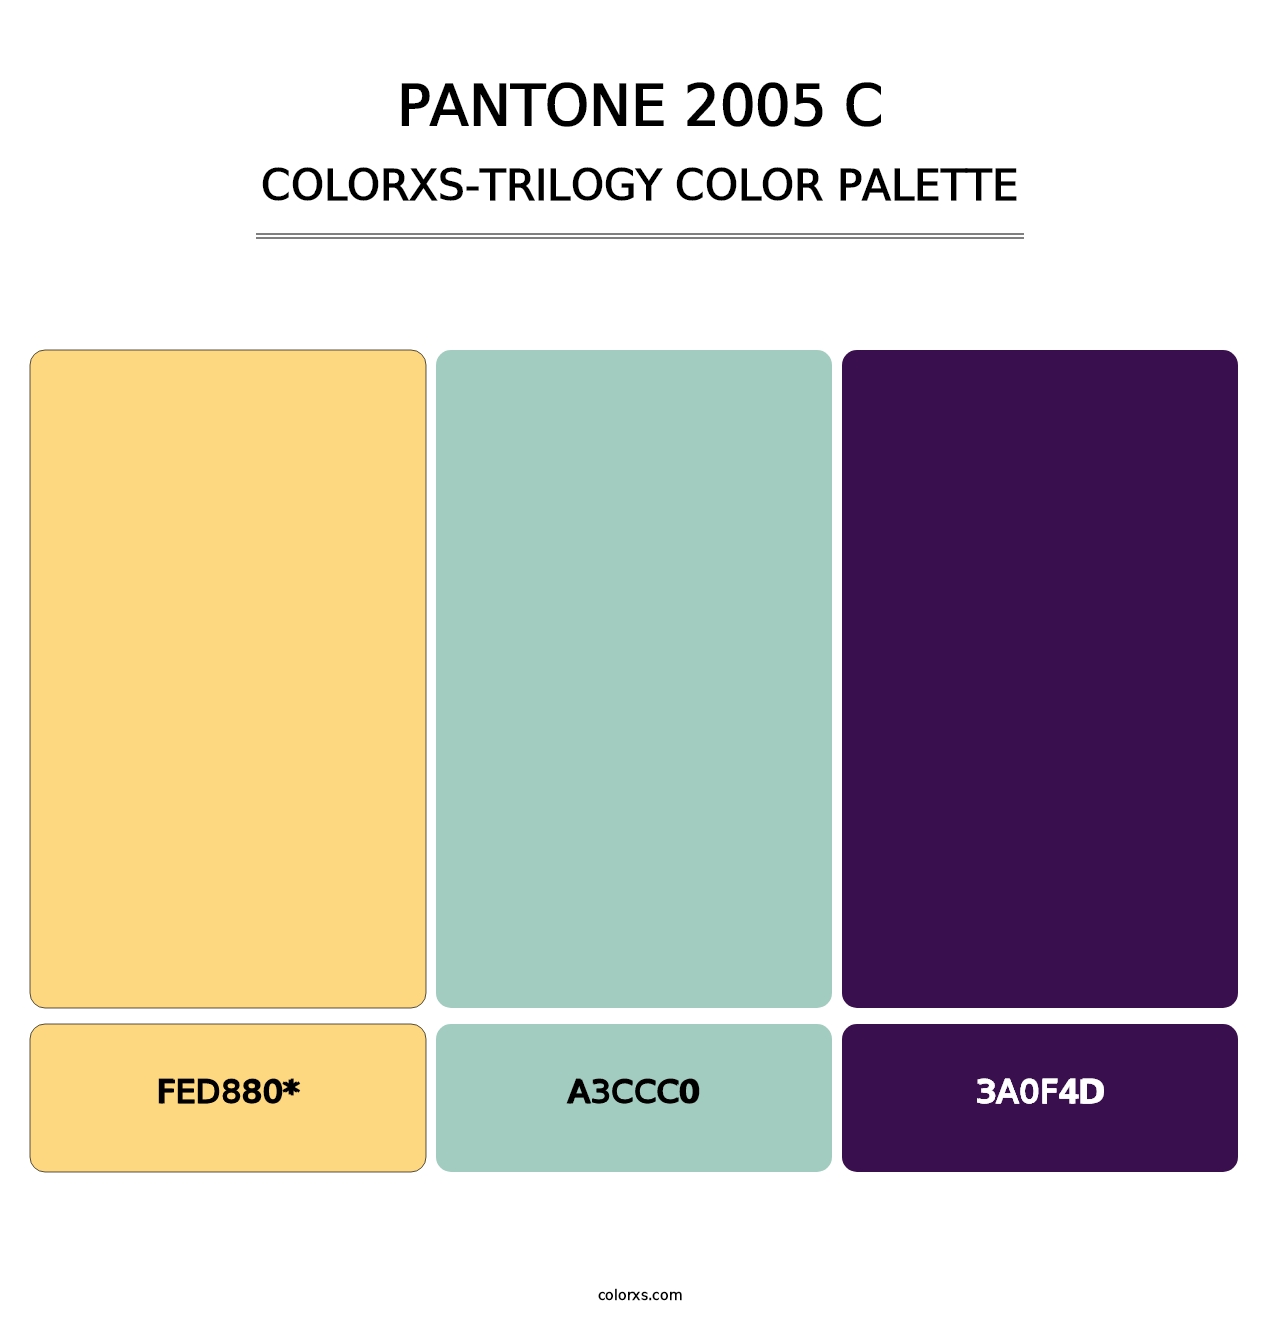 PANTONE 2005 C - Colorxs Trilogy Palette